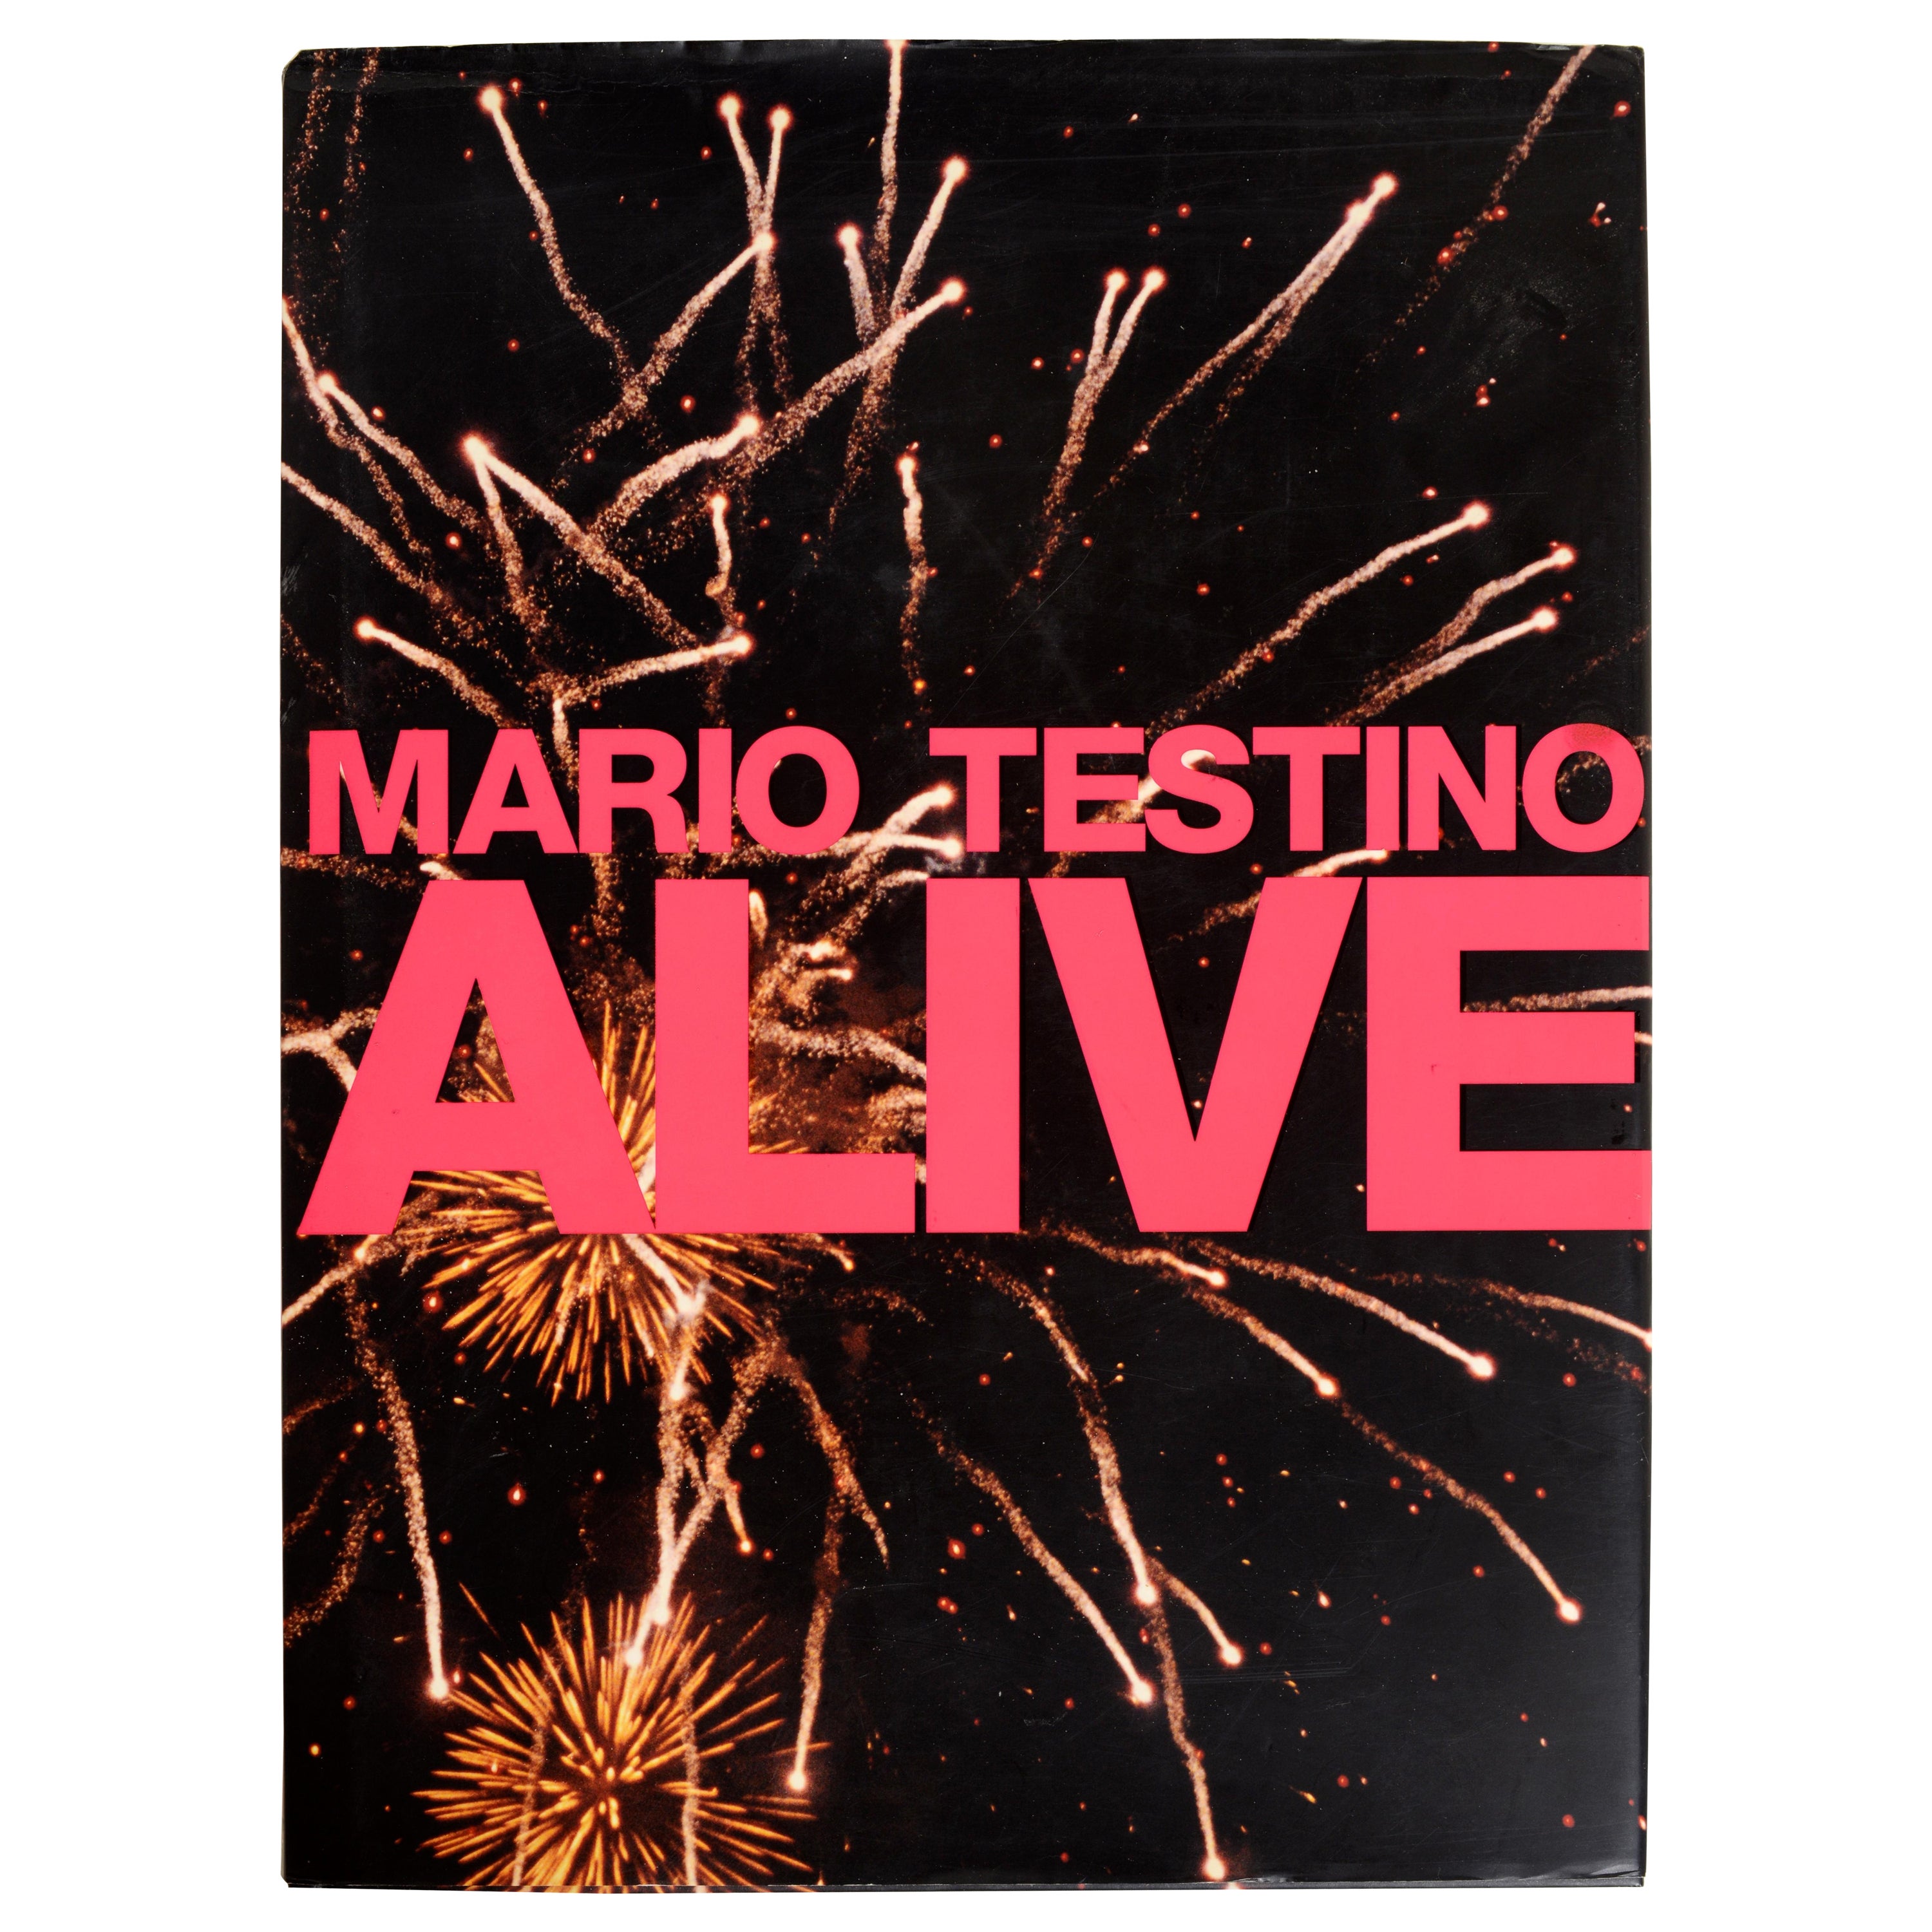 Mario Testino Alive-Einführung von Gwenth Paltrow, vom 1. Jh. im Angebot